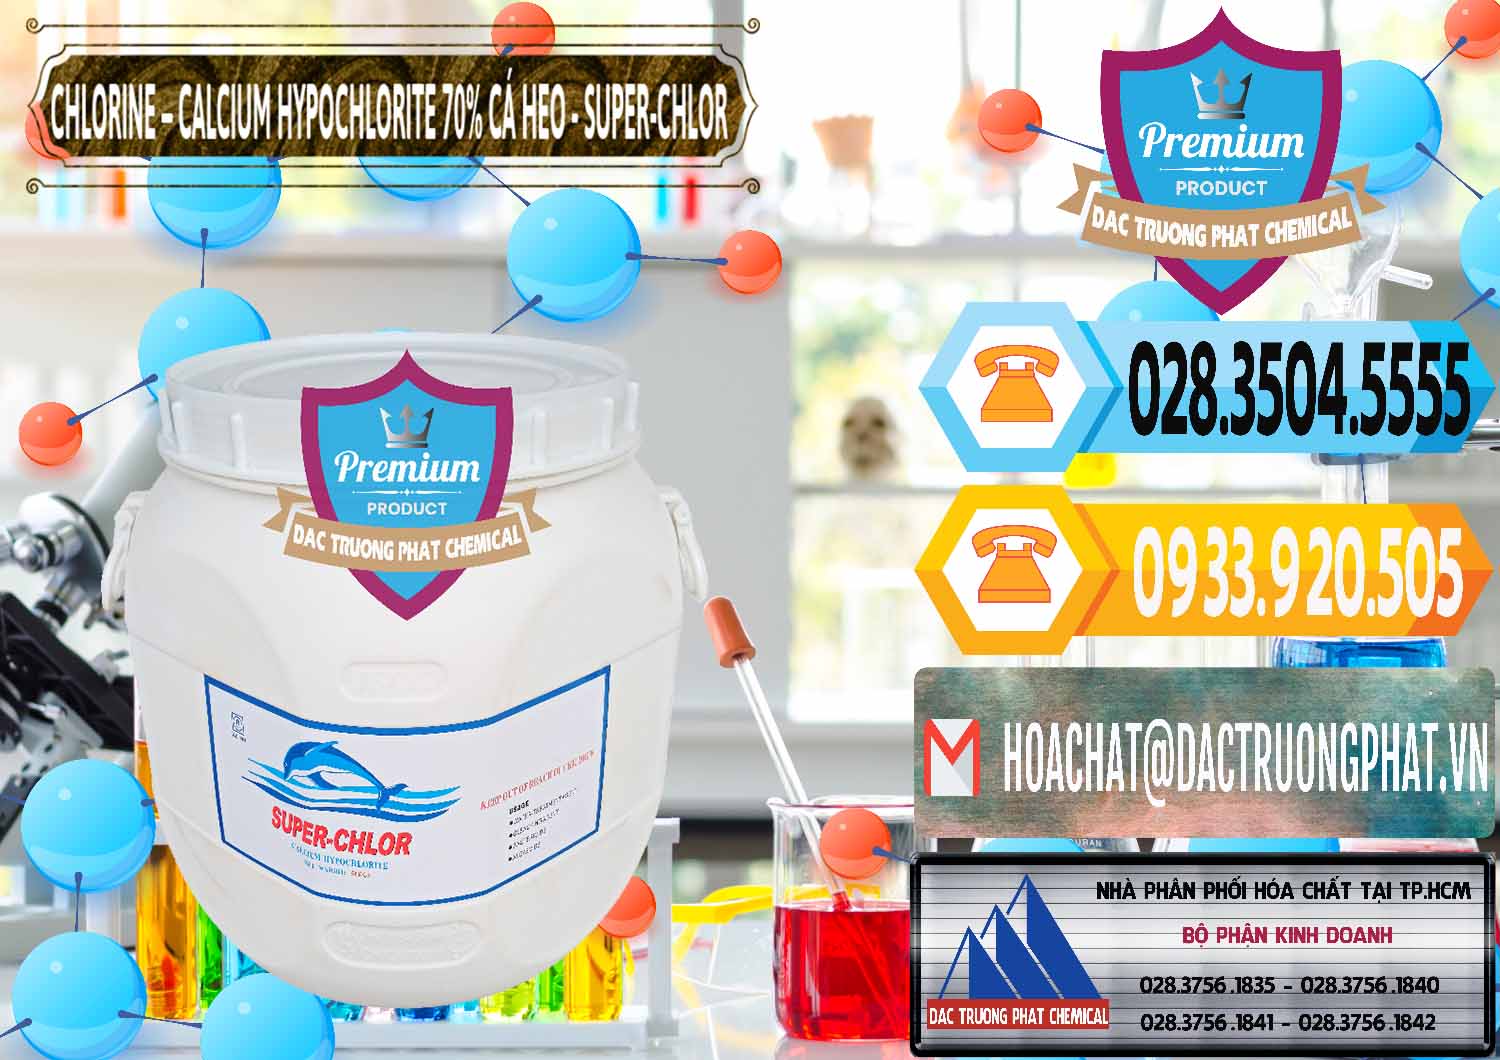 Công ty bán ( cung cấp ) Clorin - Chlorine Cá Heo 70% Super Chlor Trung Quốc China - 0058 - Kinh doanh - phân phối hóa chất tại TP.HCM - hoachattayrua.net